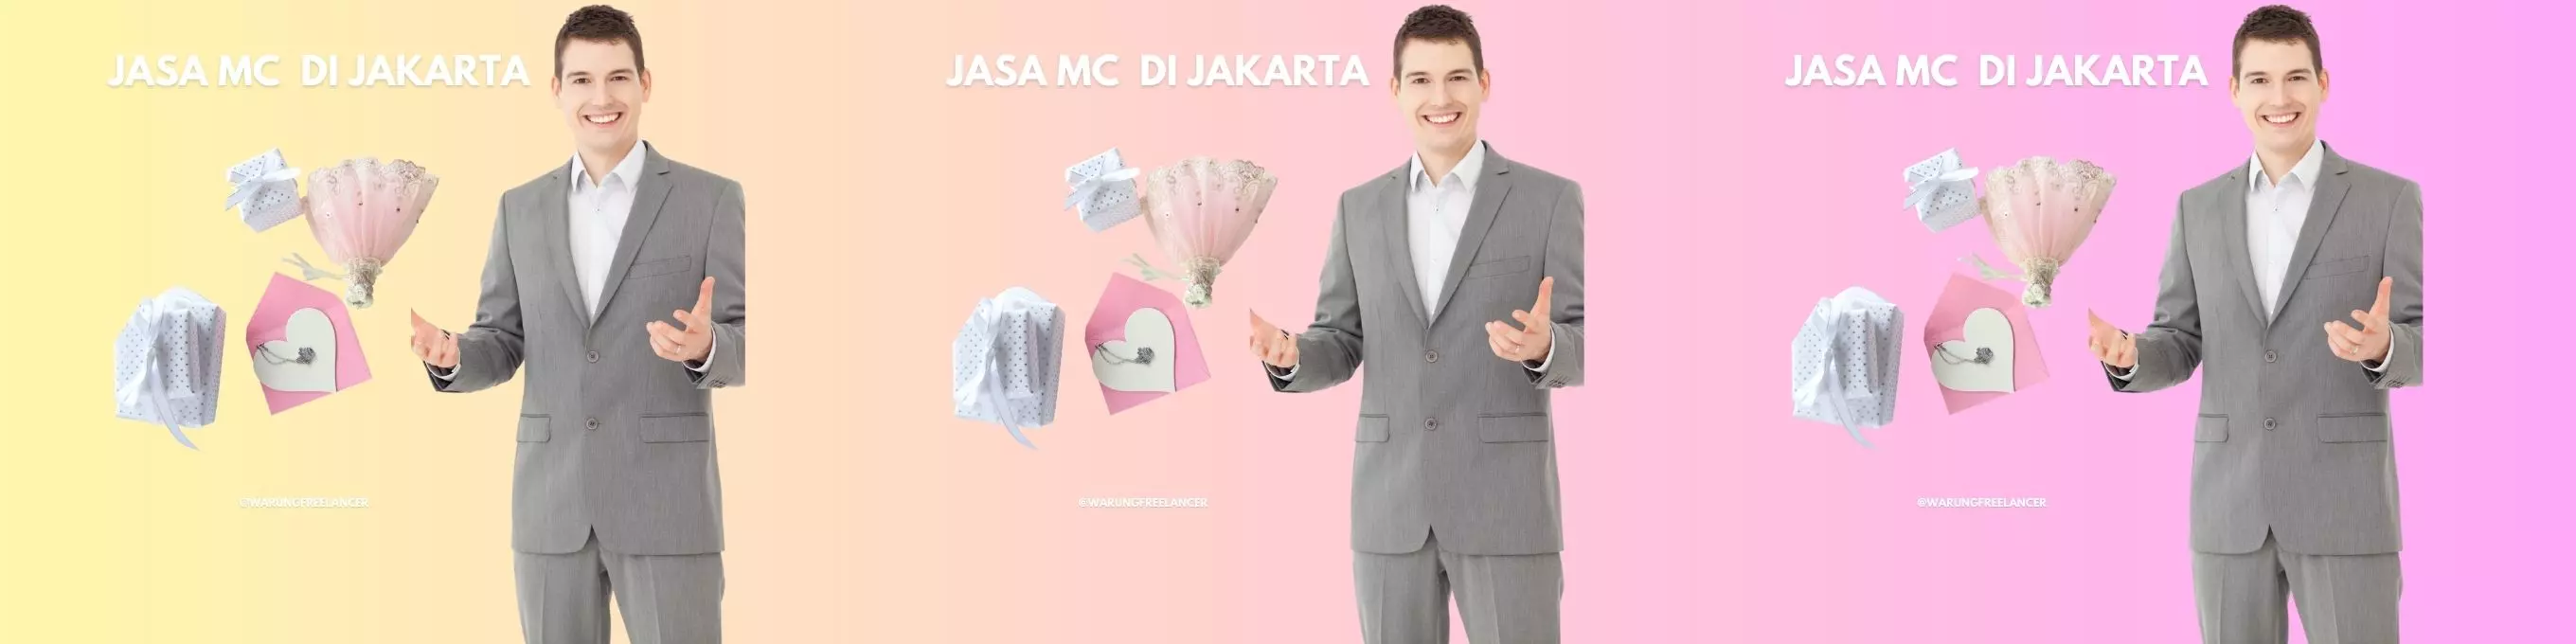 Jasa MC Jakarta